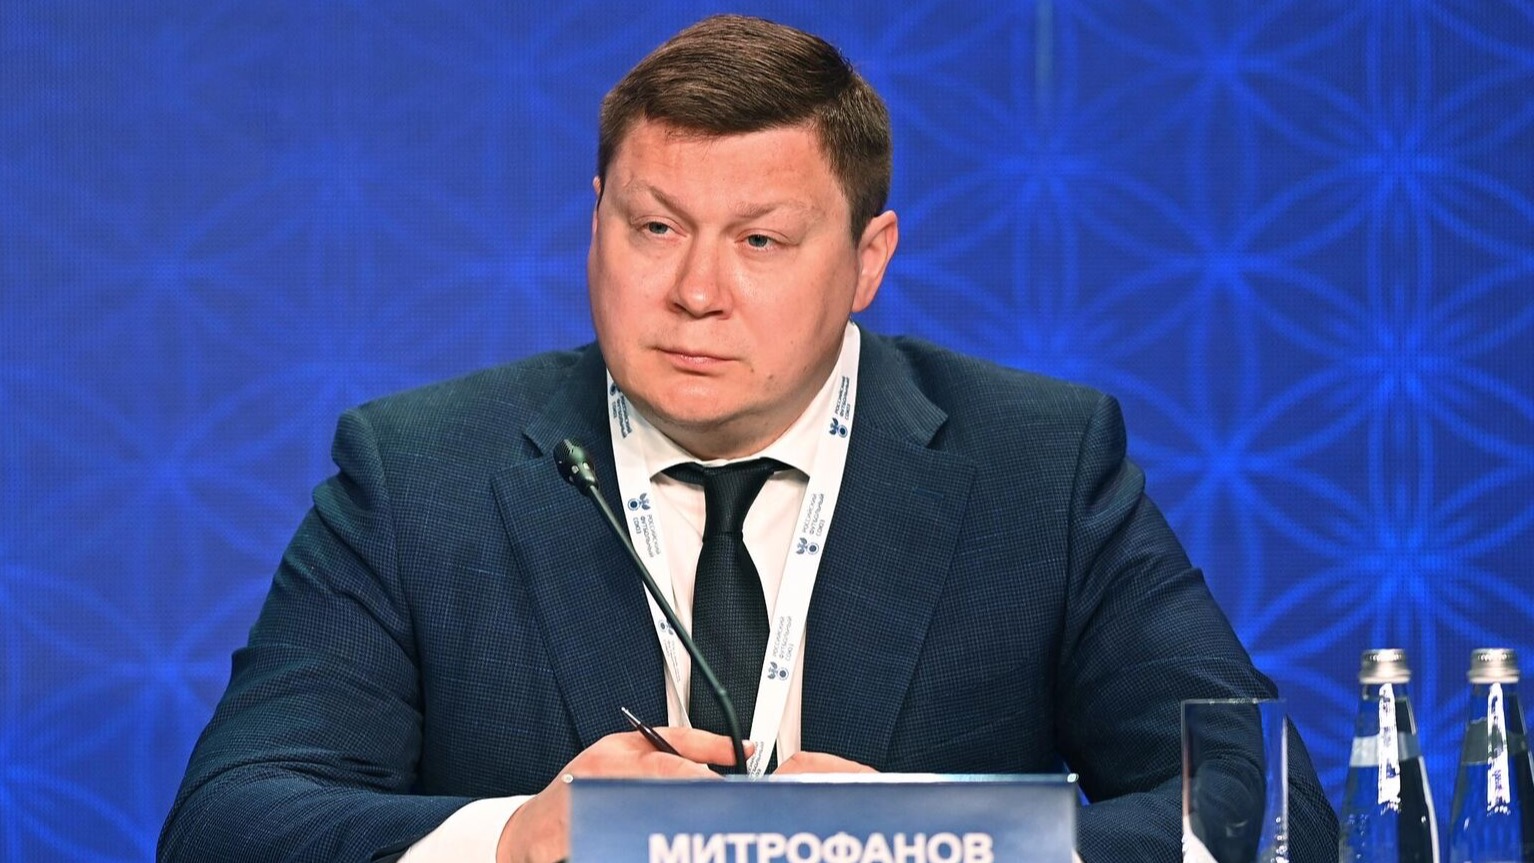 Митрофанов предположил, что на ФИФА оказывают давление с целью исключить РФС из её состава